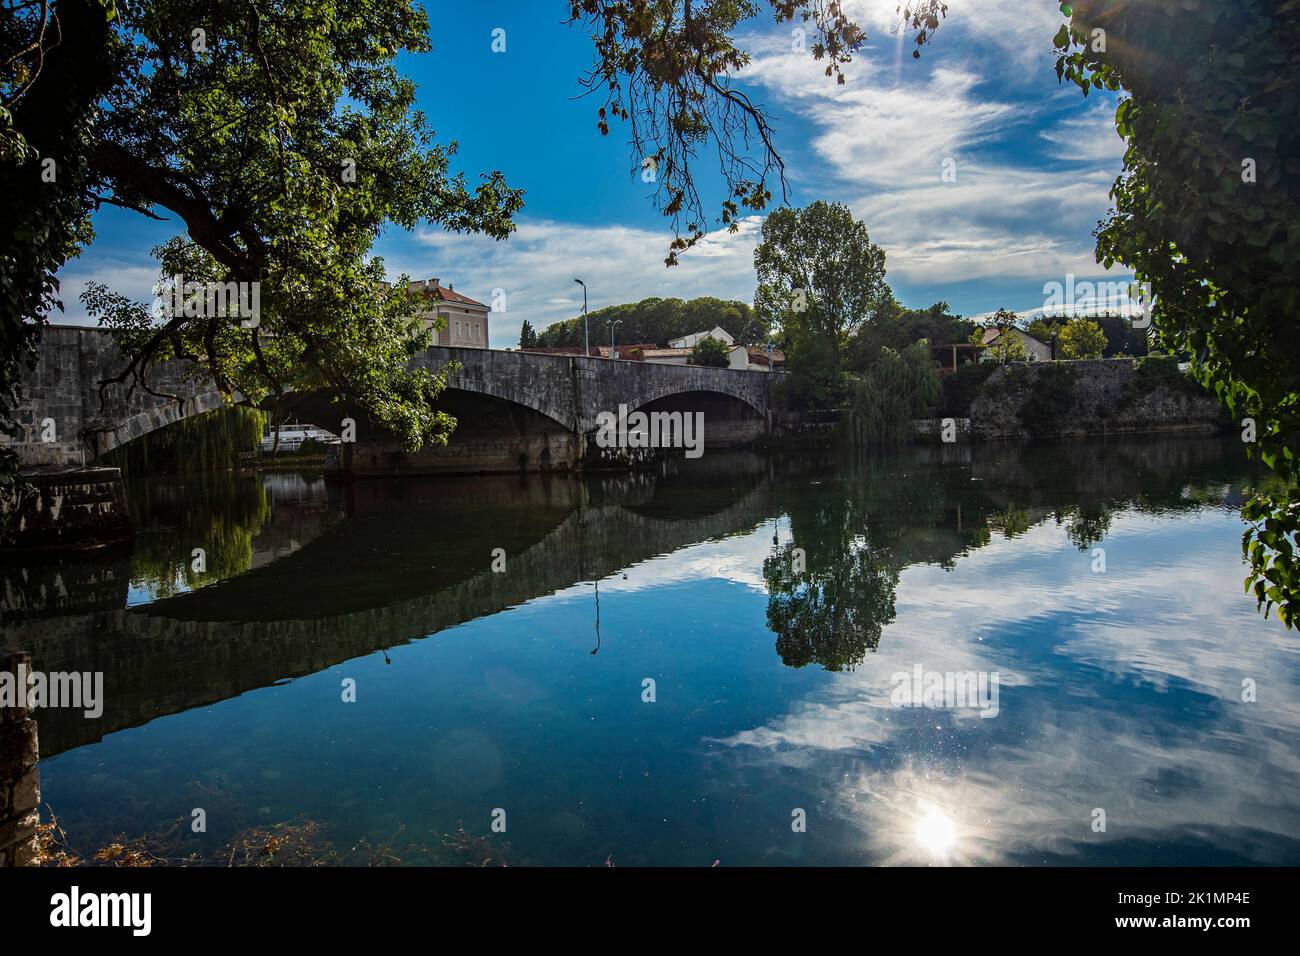 Vista al río Trebisnjica en la ciudad de Trebinje, Bosnia y Herzegovina Foto de stock